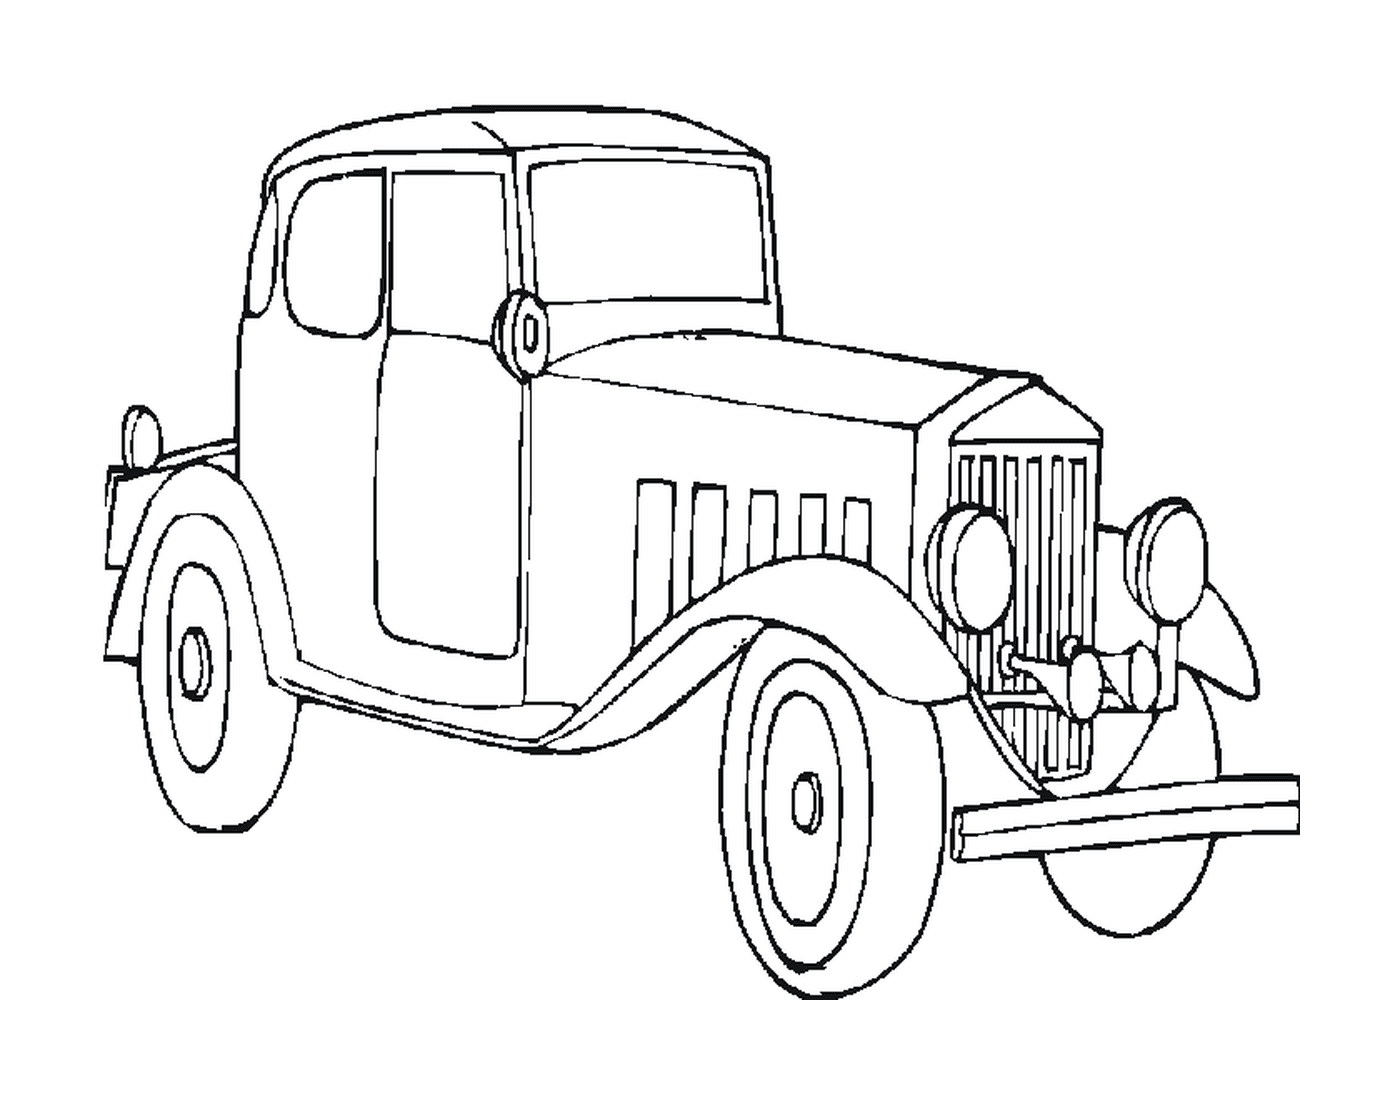  Carro velho desenhado 